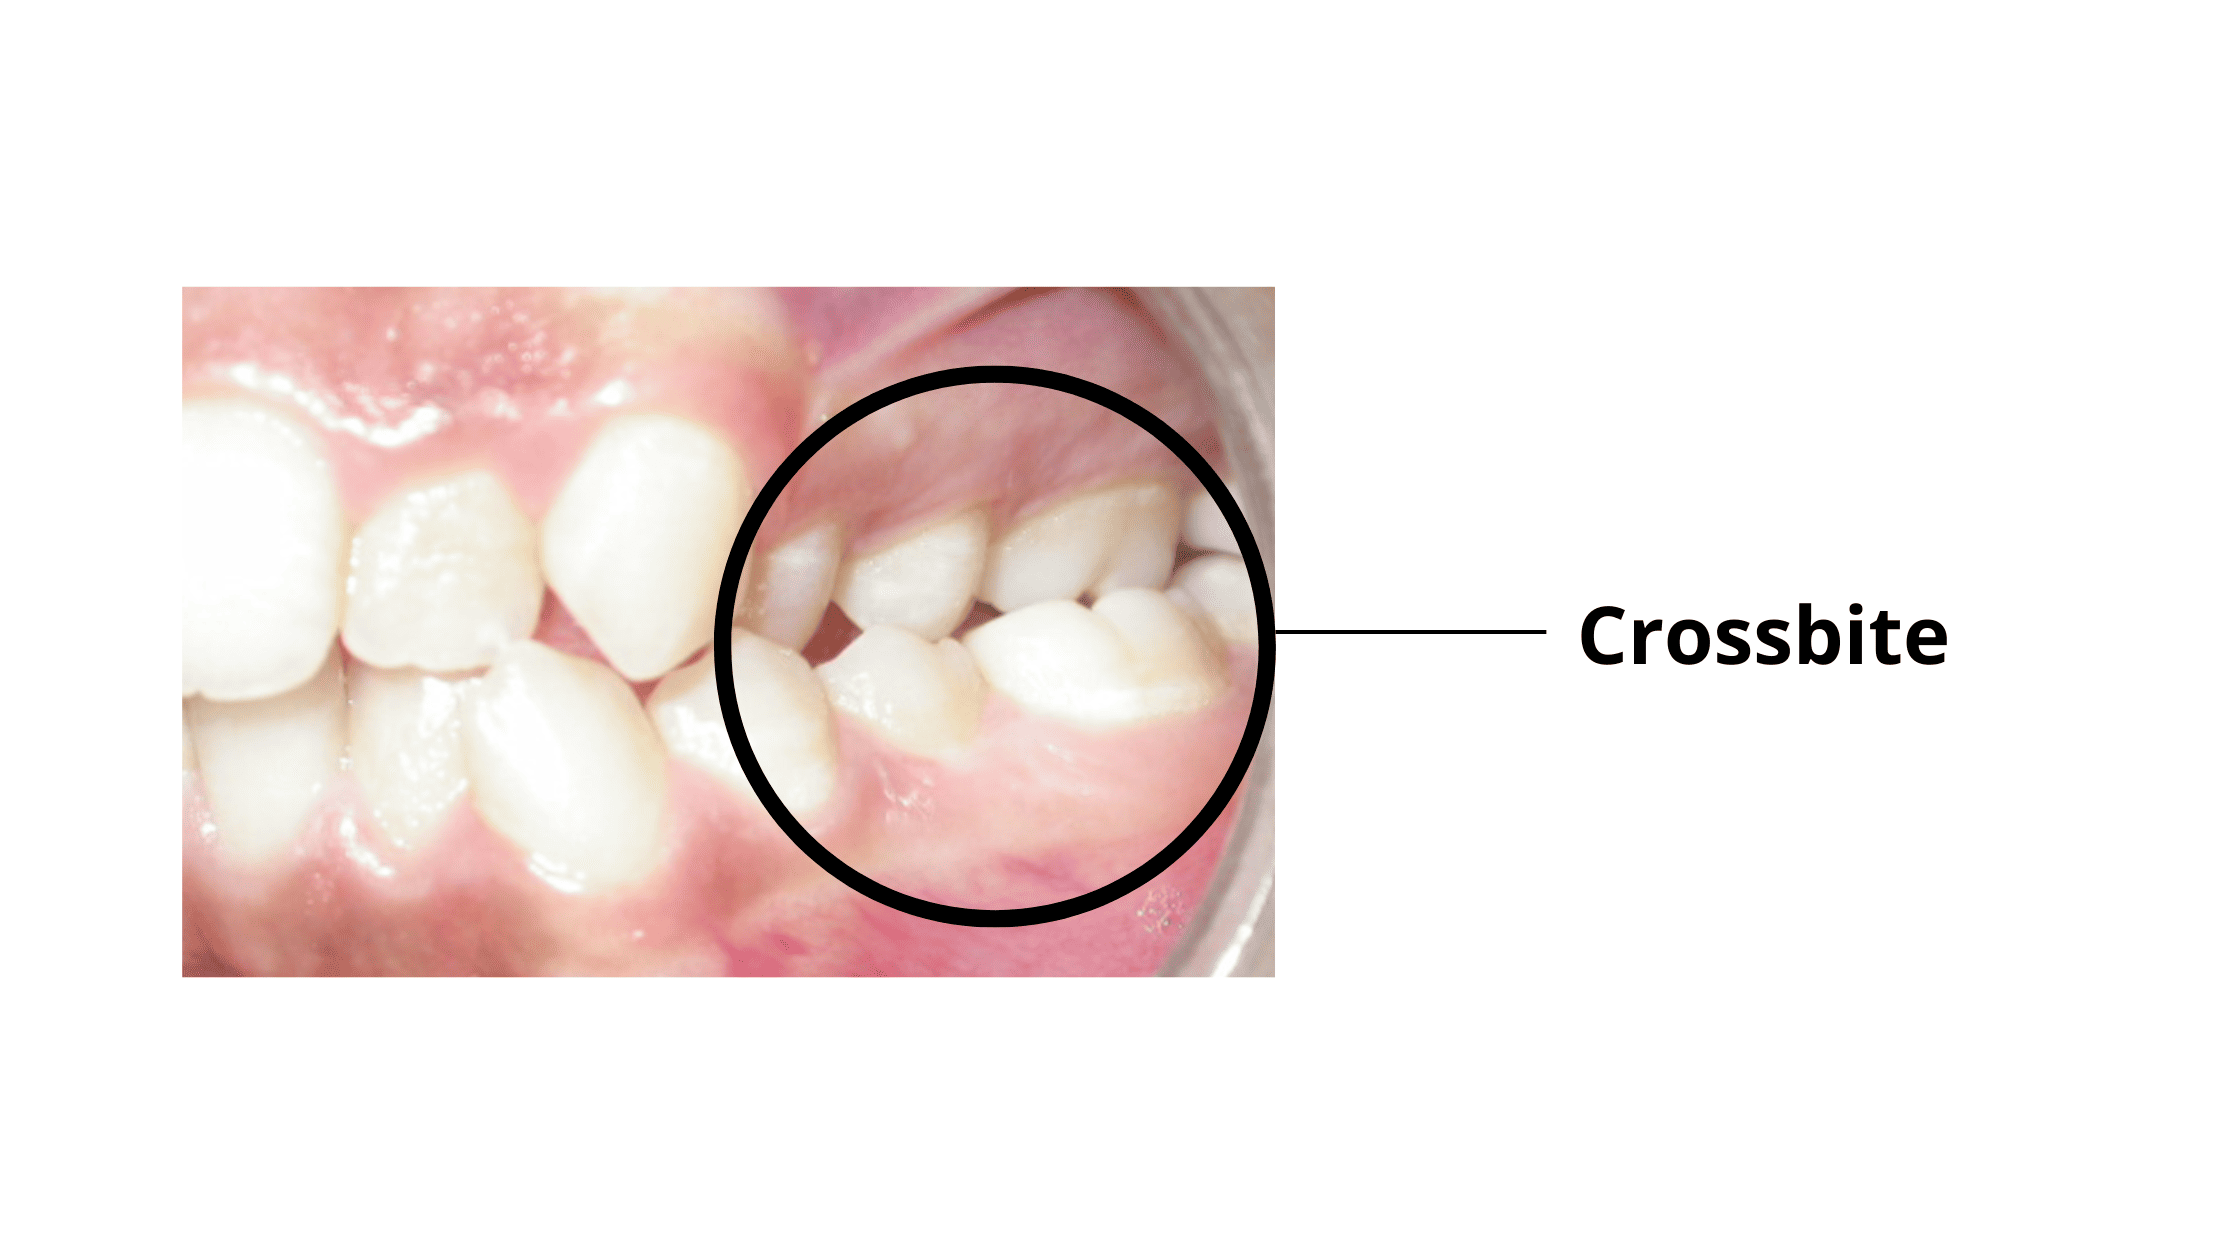 Dental crossbite: The lower molars overlapping the upper ones